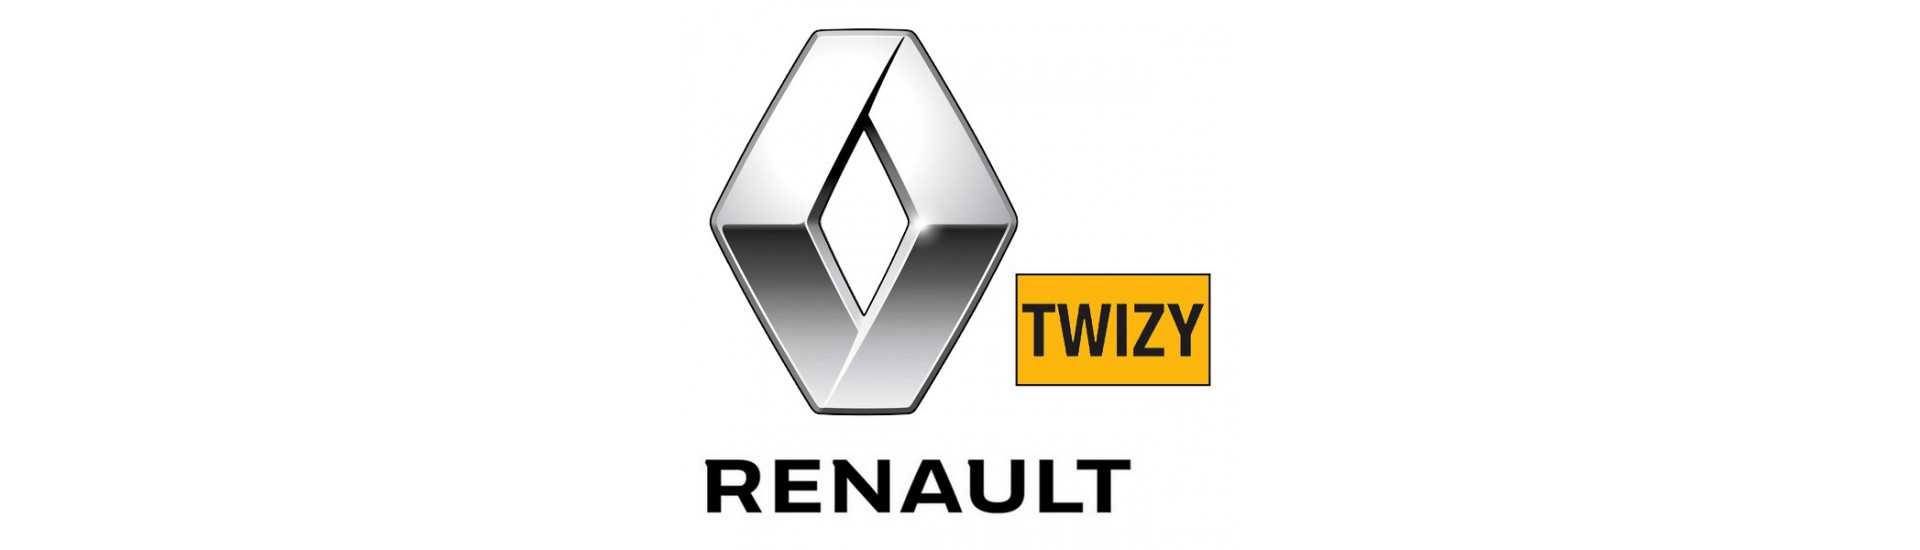 Cardan till bästa pris för bil utan tillstånd Renault Twizy